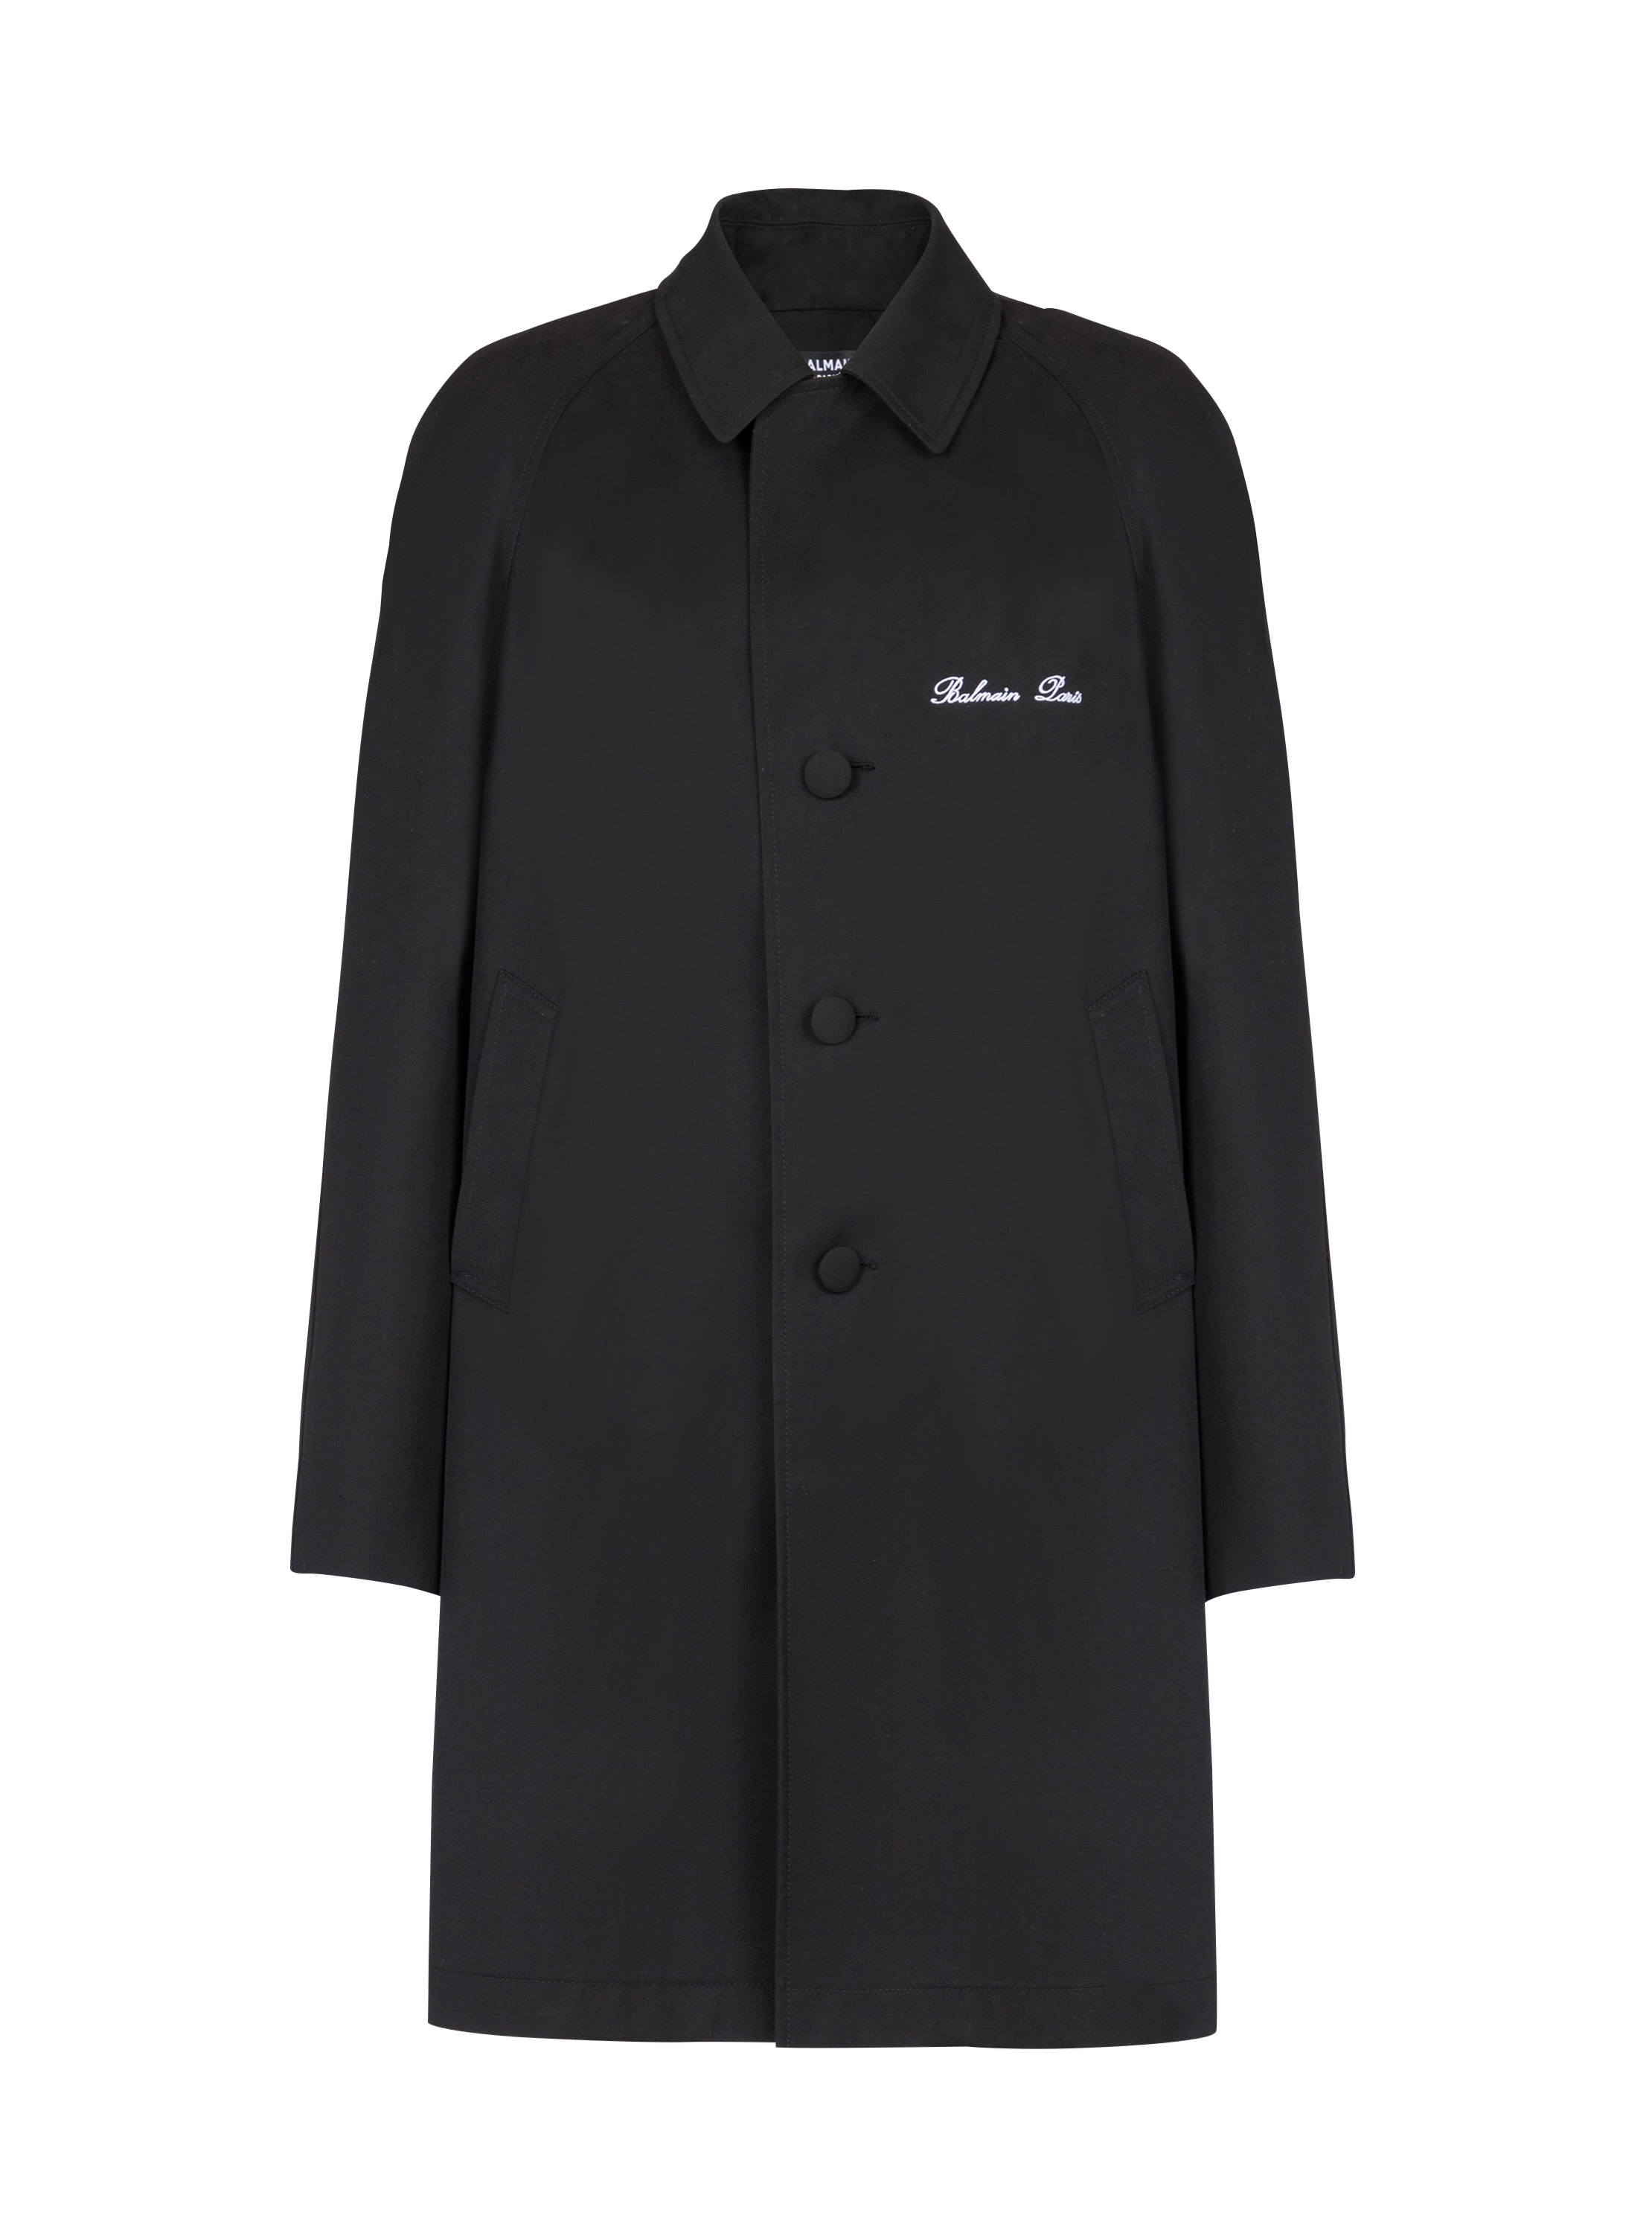 Balmain Signature car coat, black, hi-res